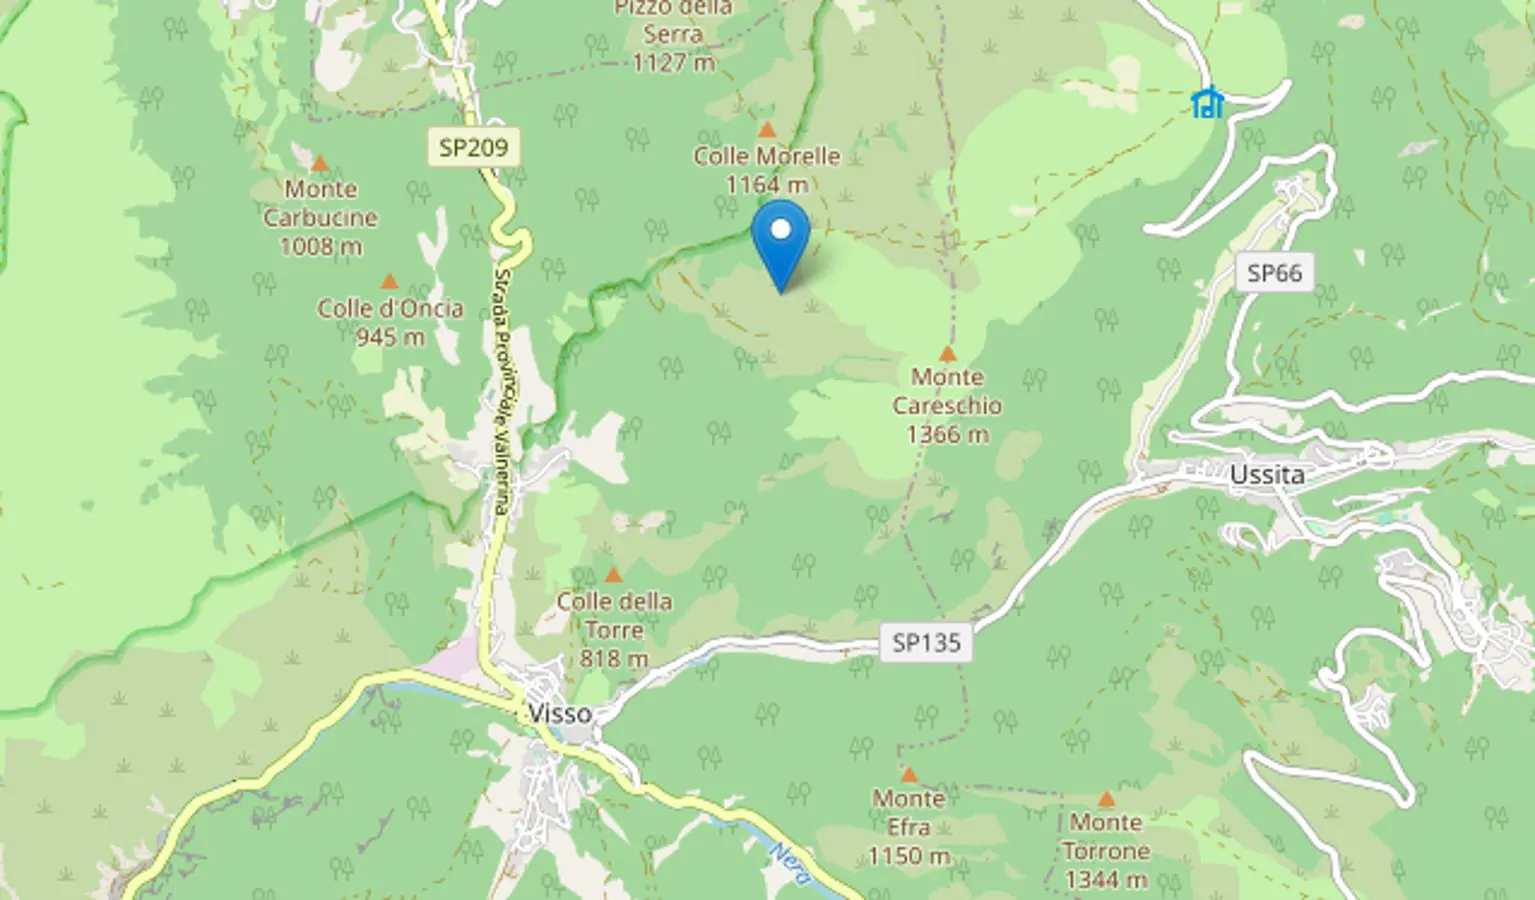 Screen della mappa pubblicata su INGV terremoti